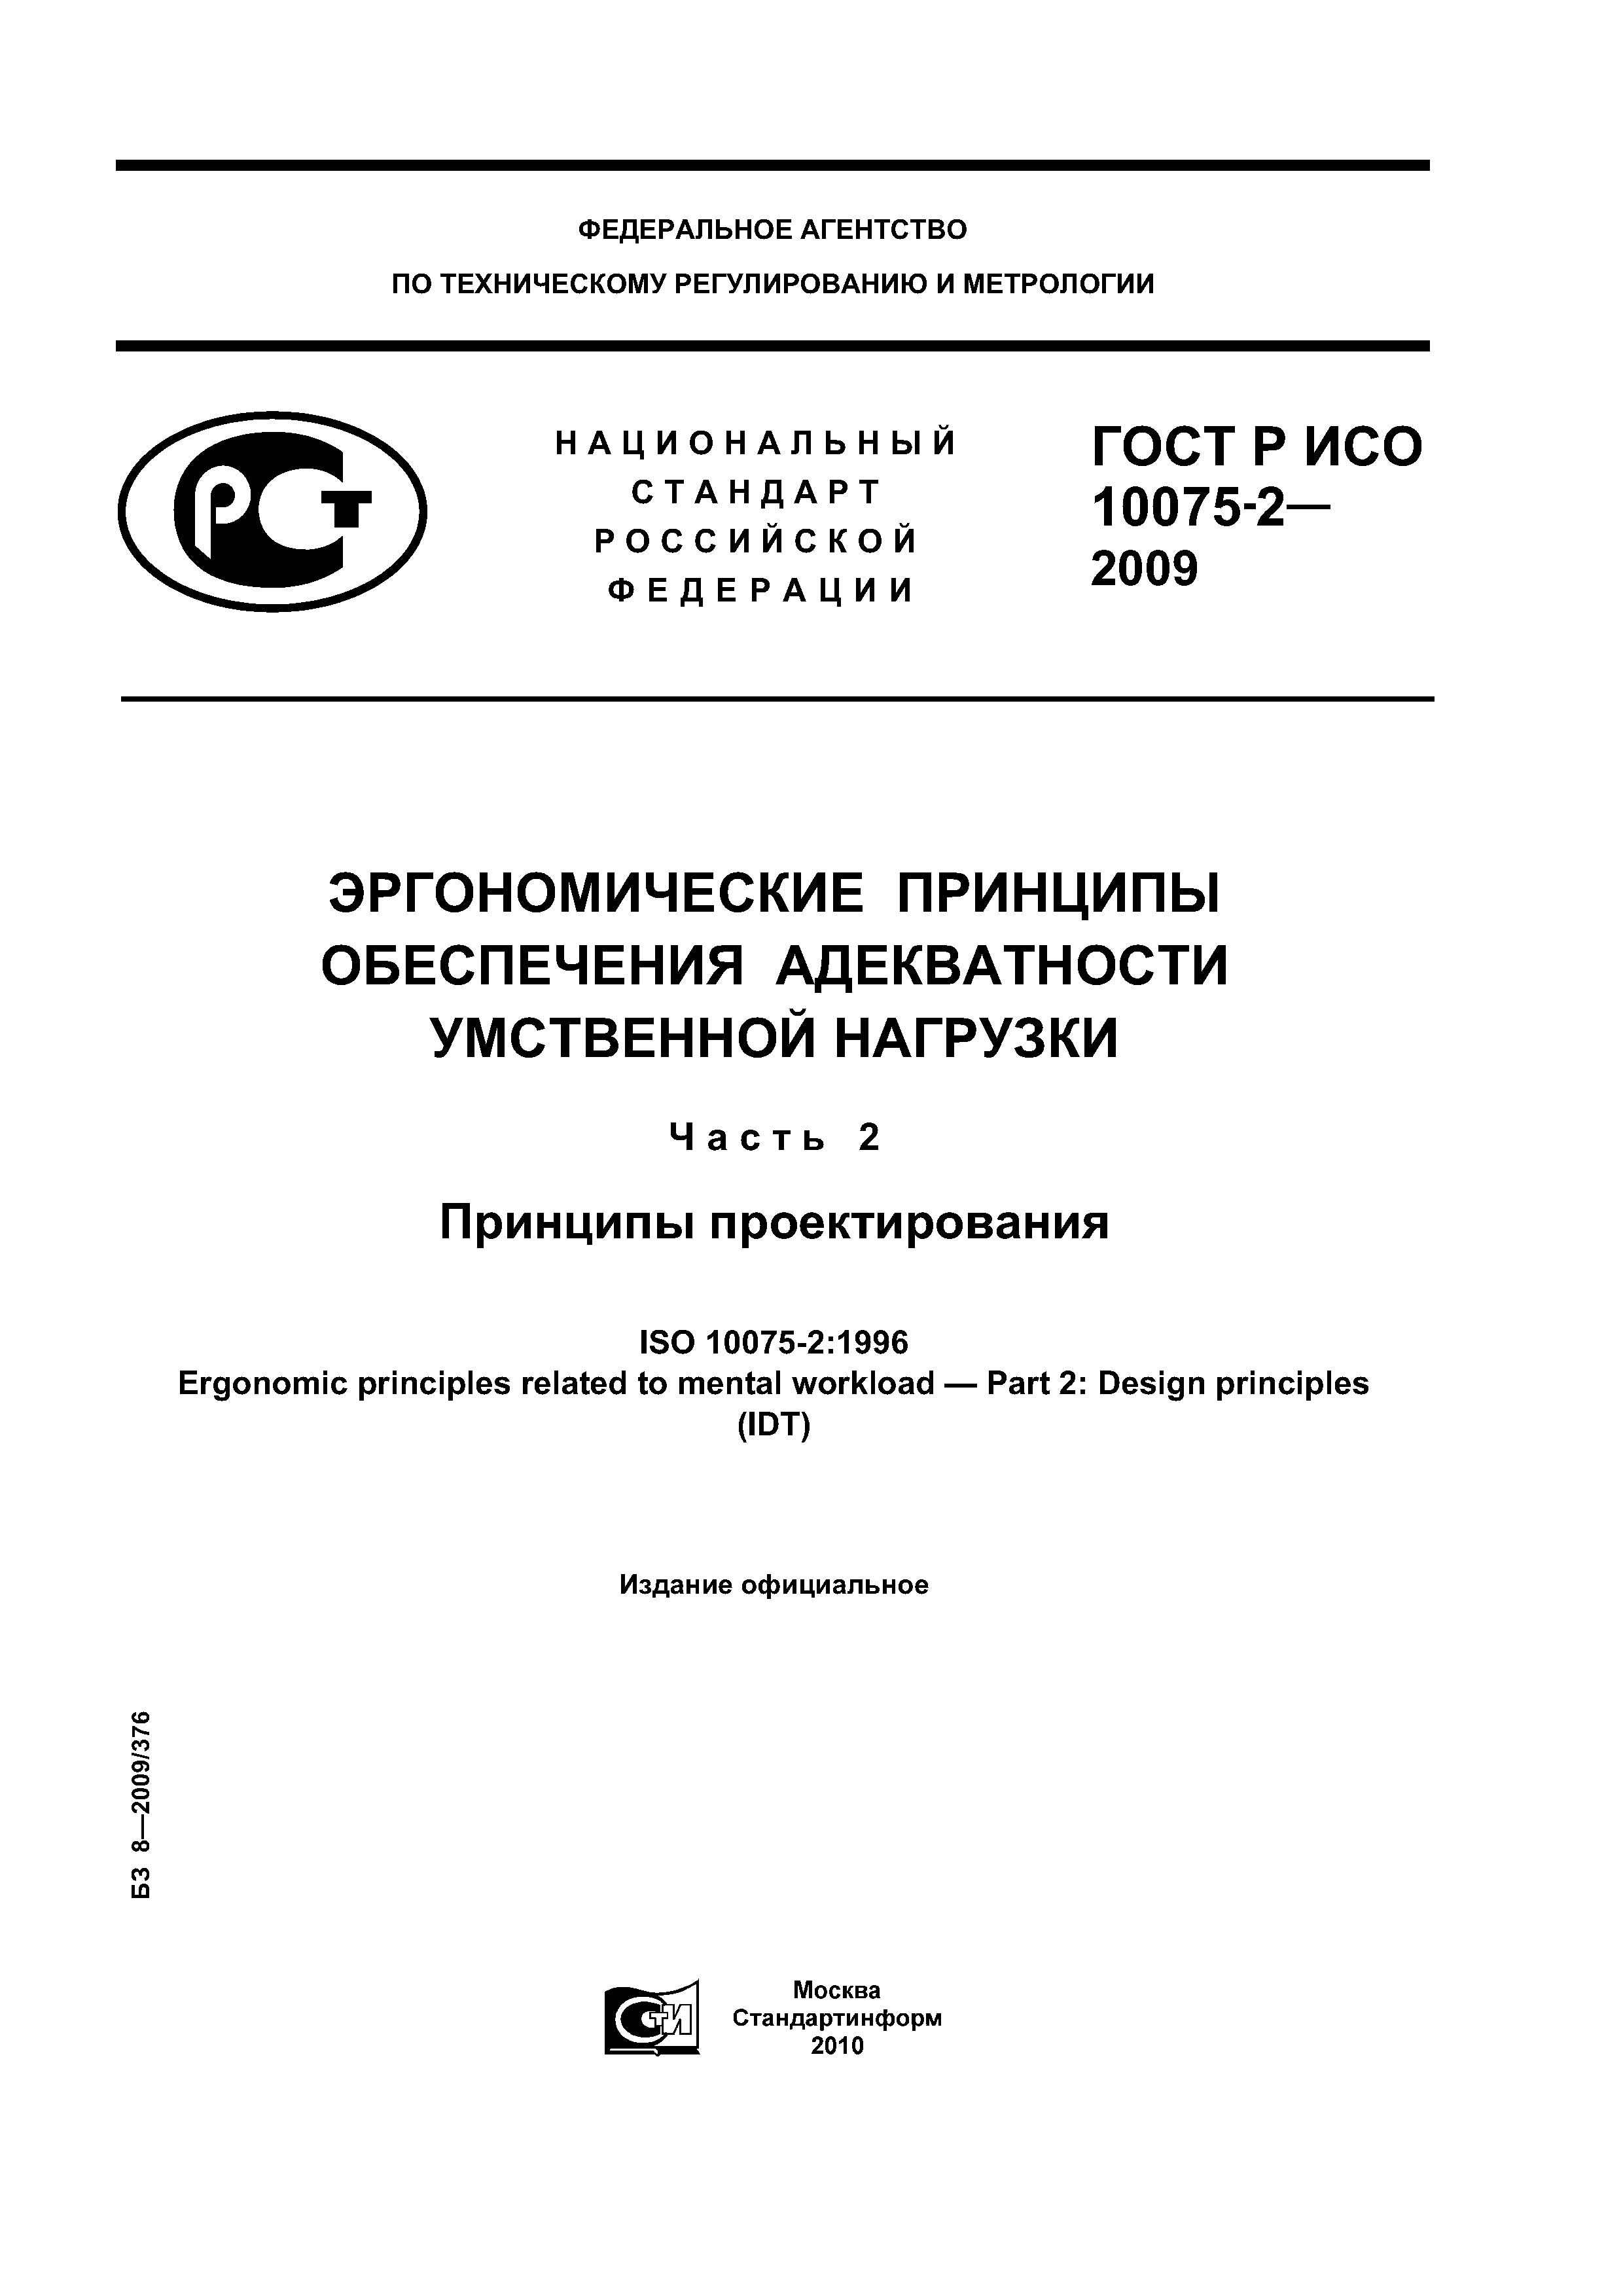 ГОСТ Р ИСО 10075-2-2009